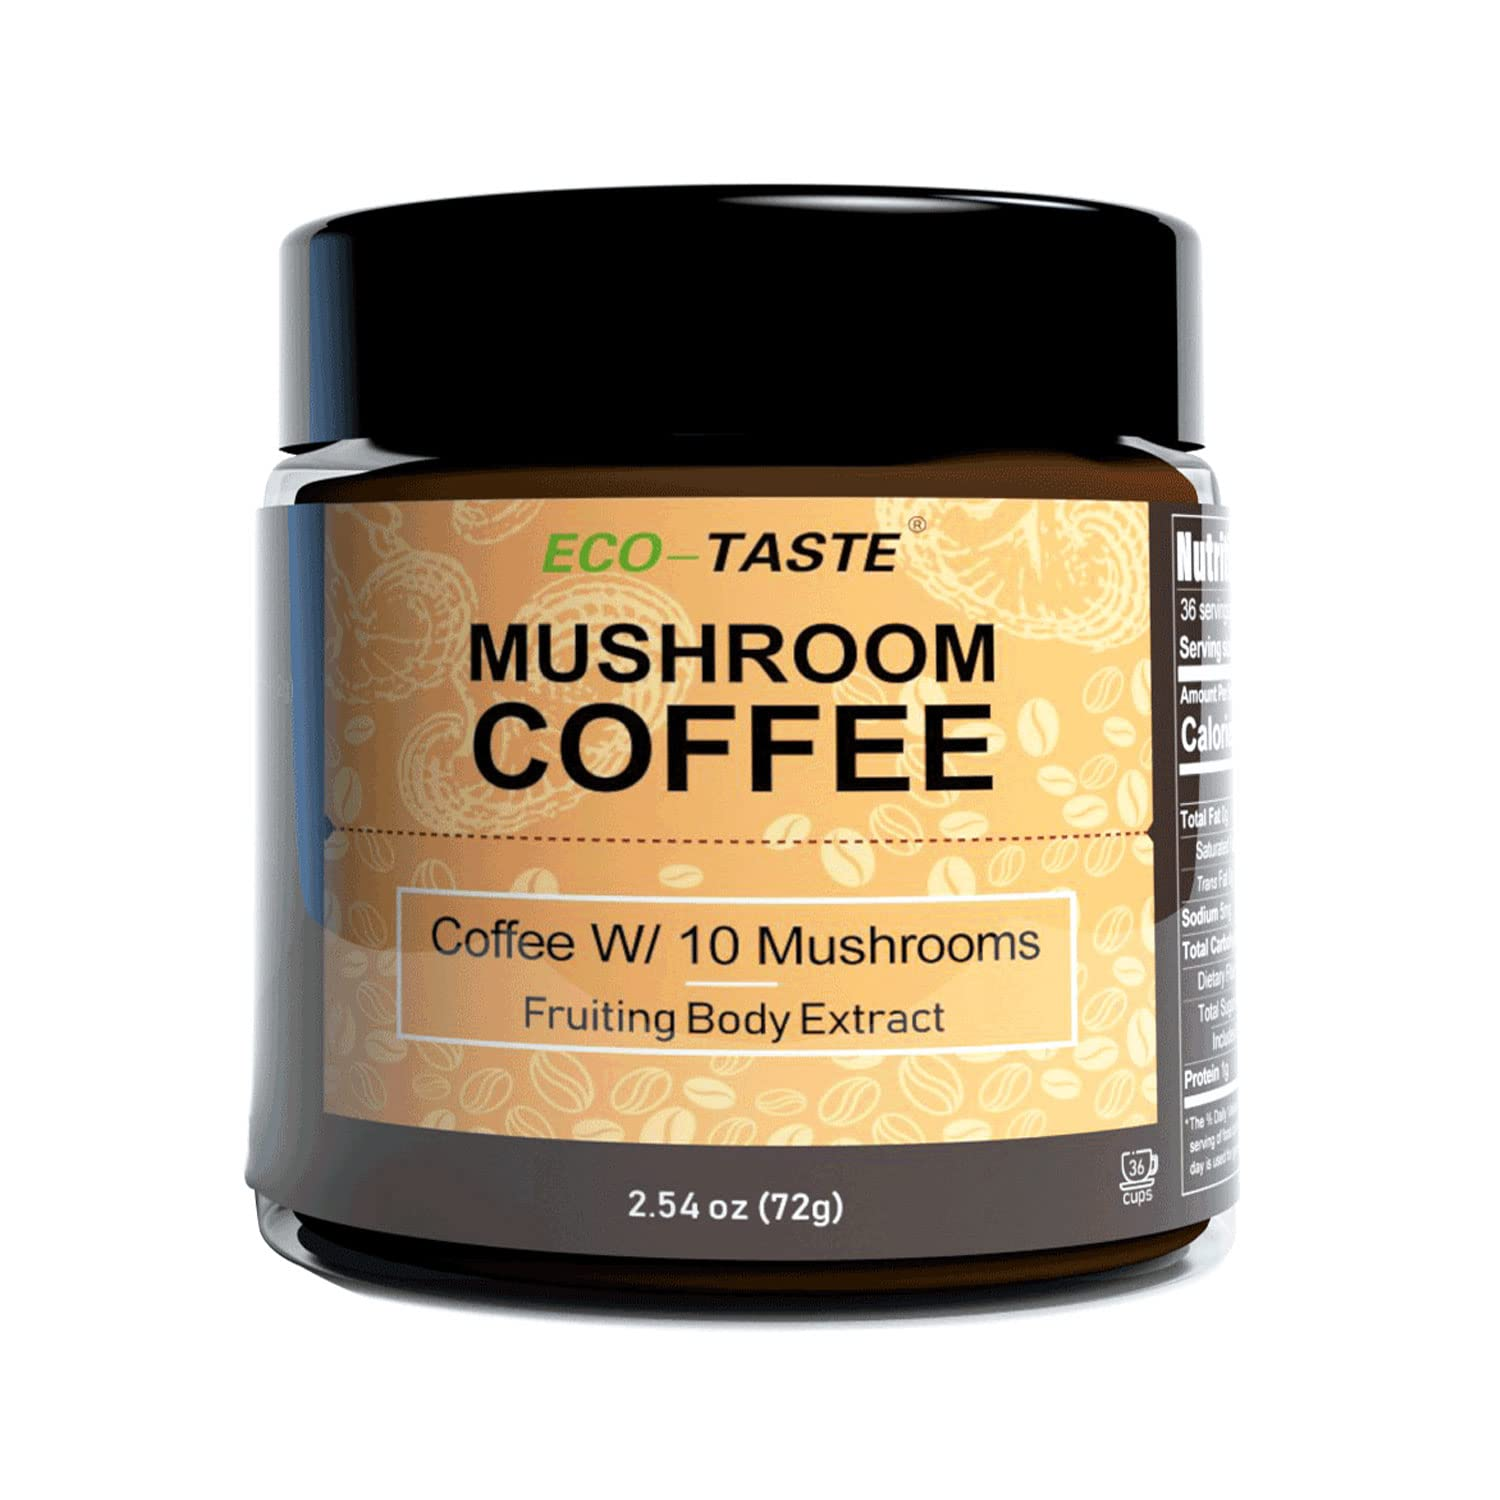 Mushroom Coffee $15.18